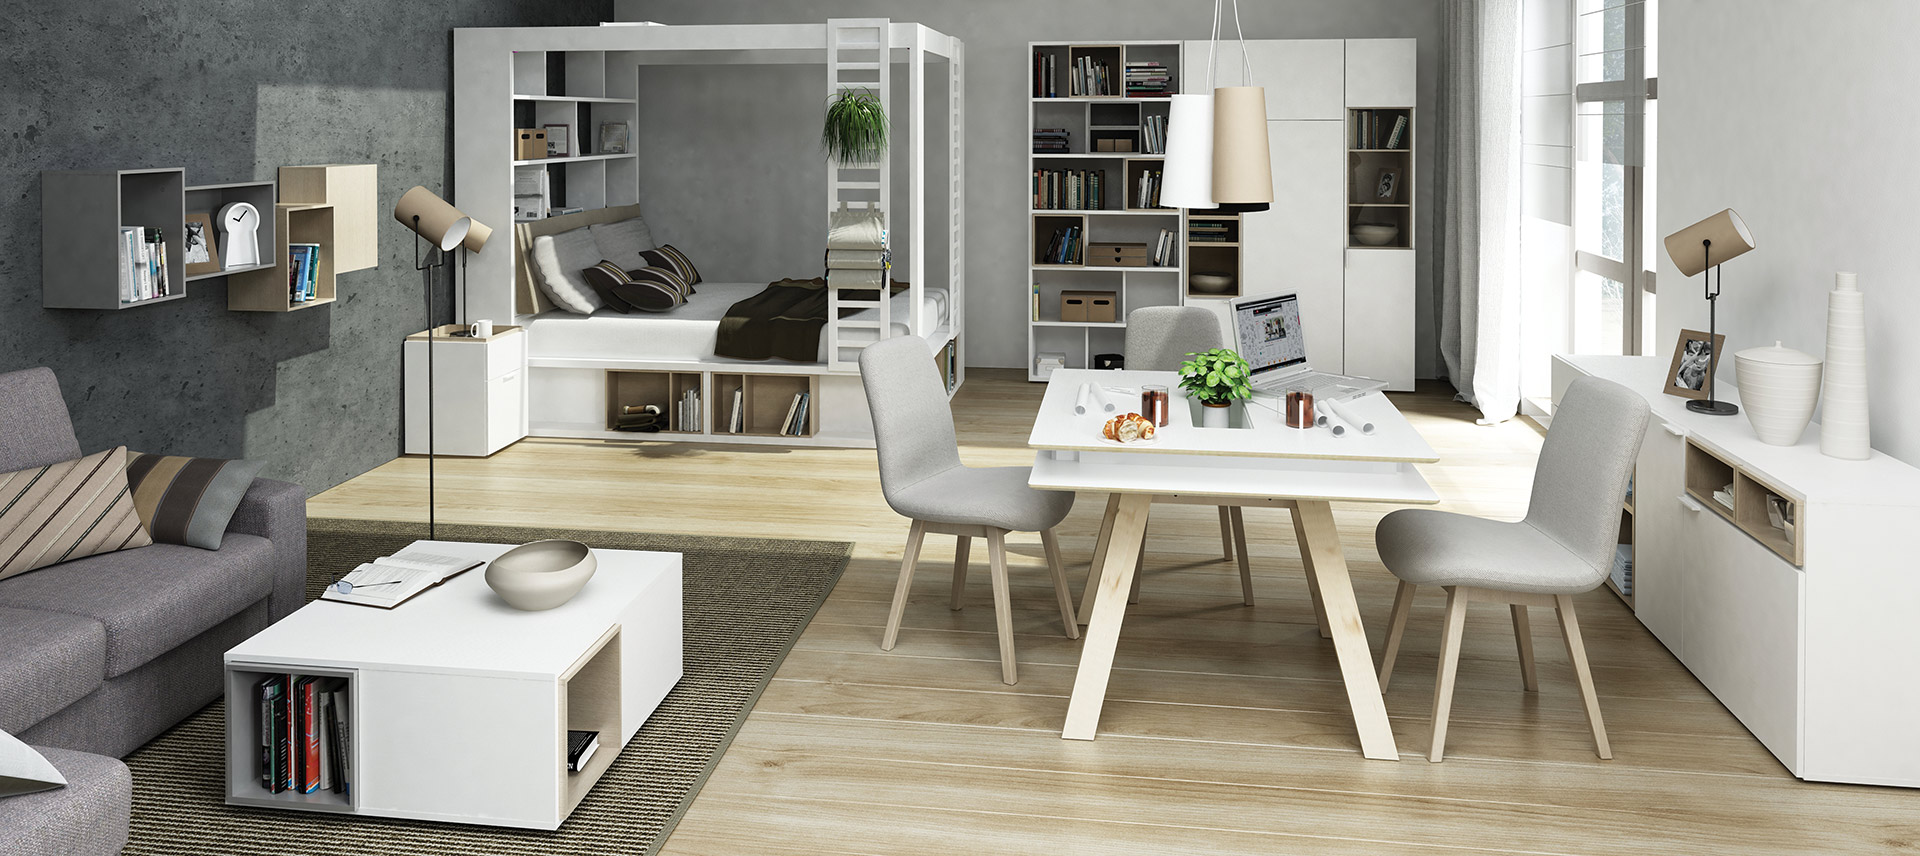 Vox мебель для гостиной белая 4you